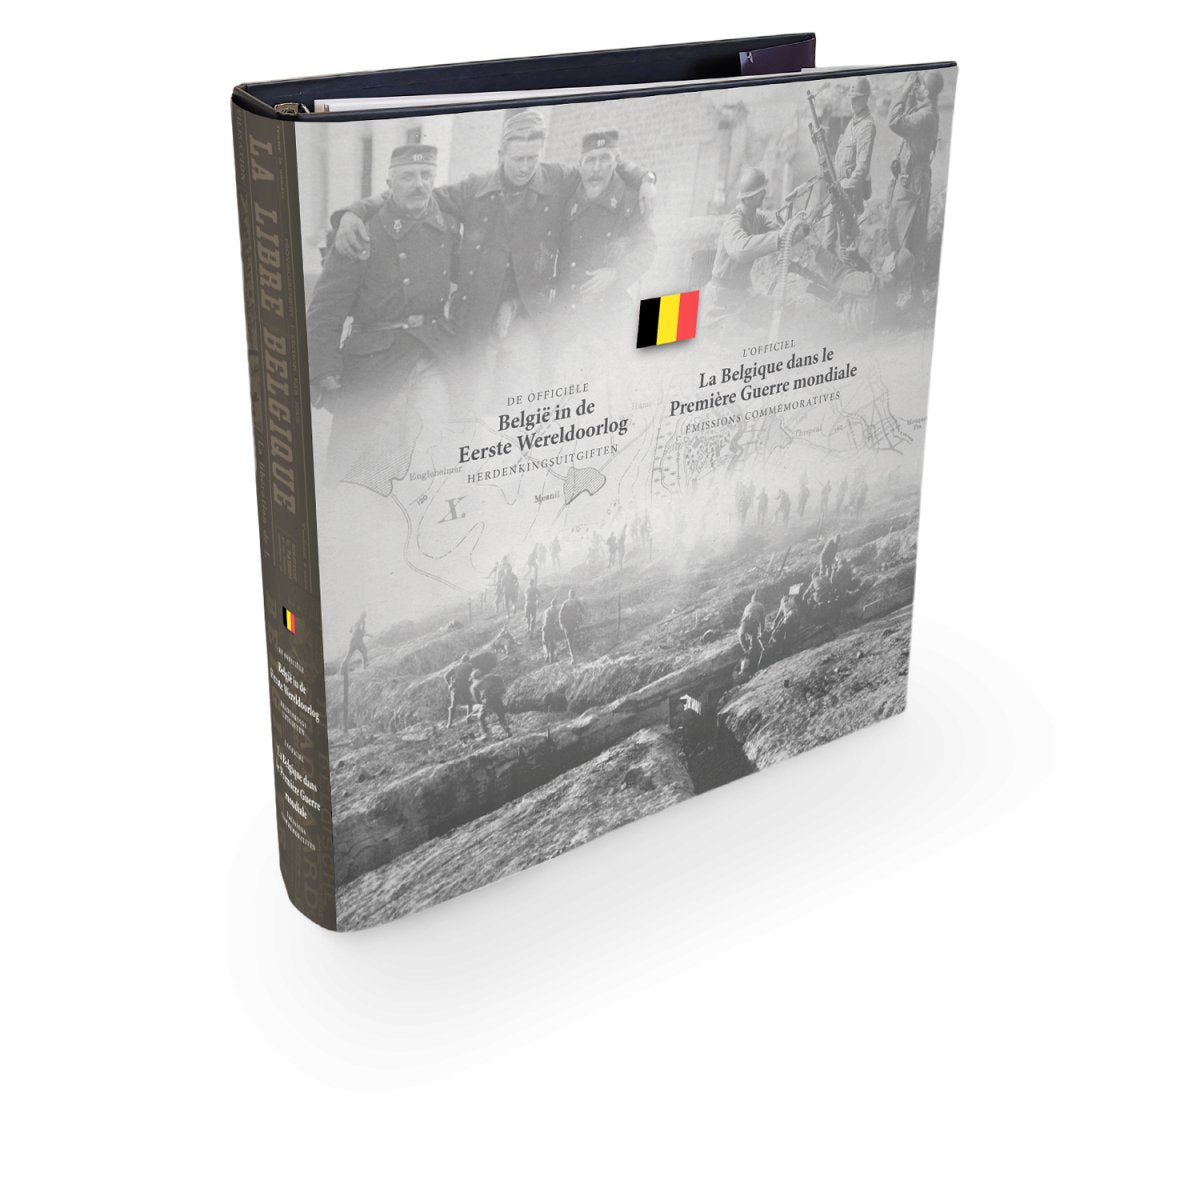 Verzamelalbum “De Groote Oorlog Herdenkingsuitgiften” - Edel Collecties